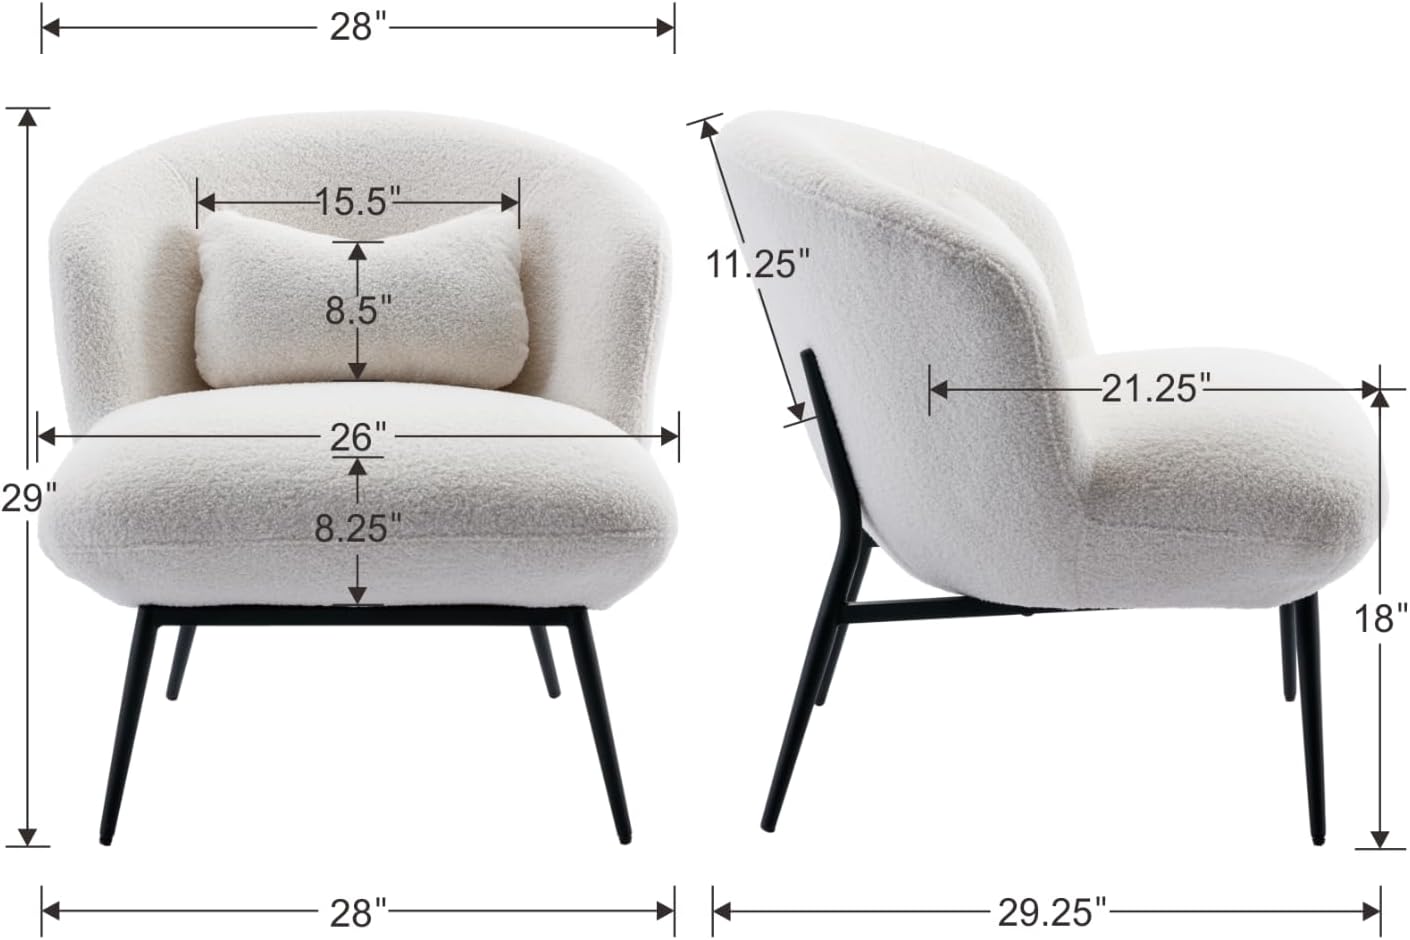 Modern Wool Chair by Opulent Design